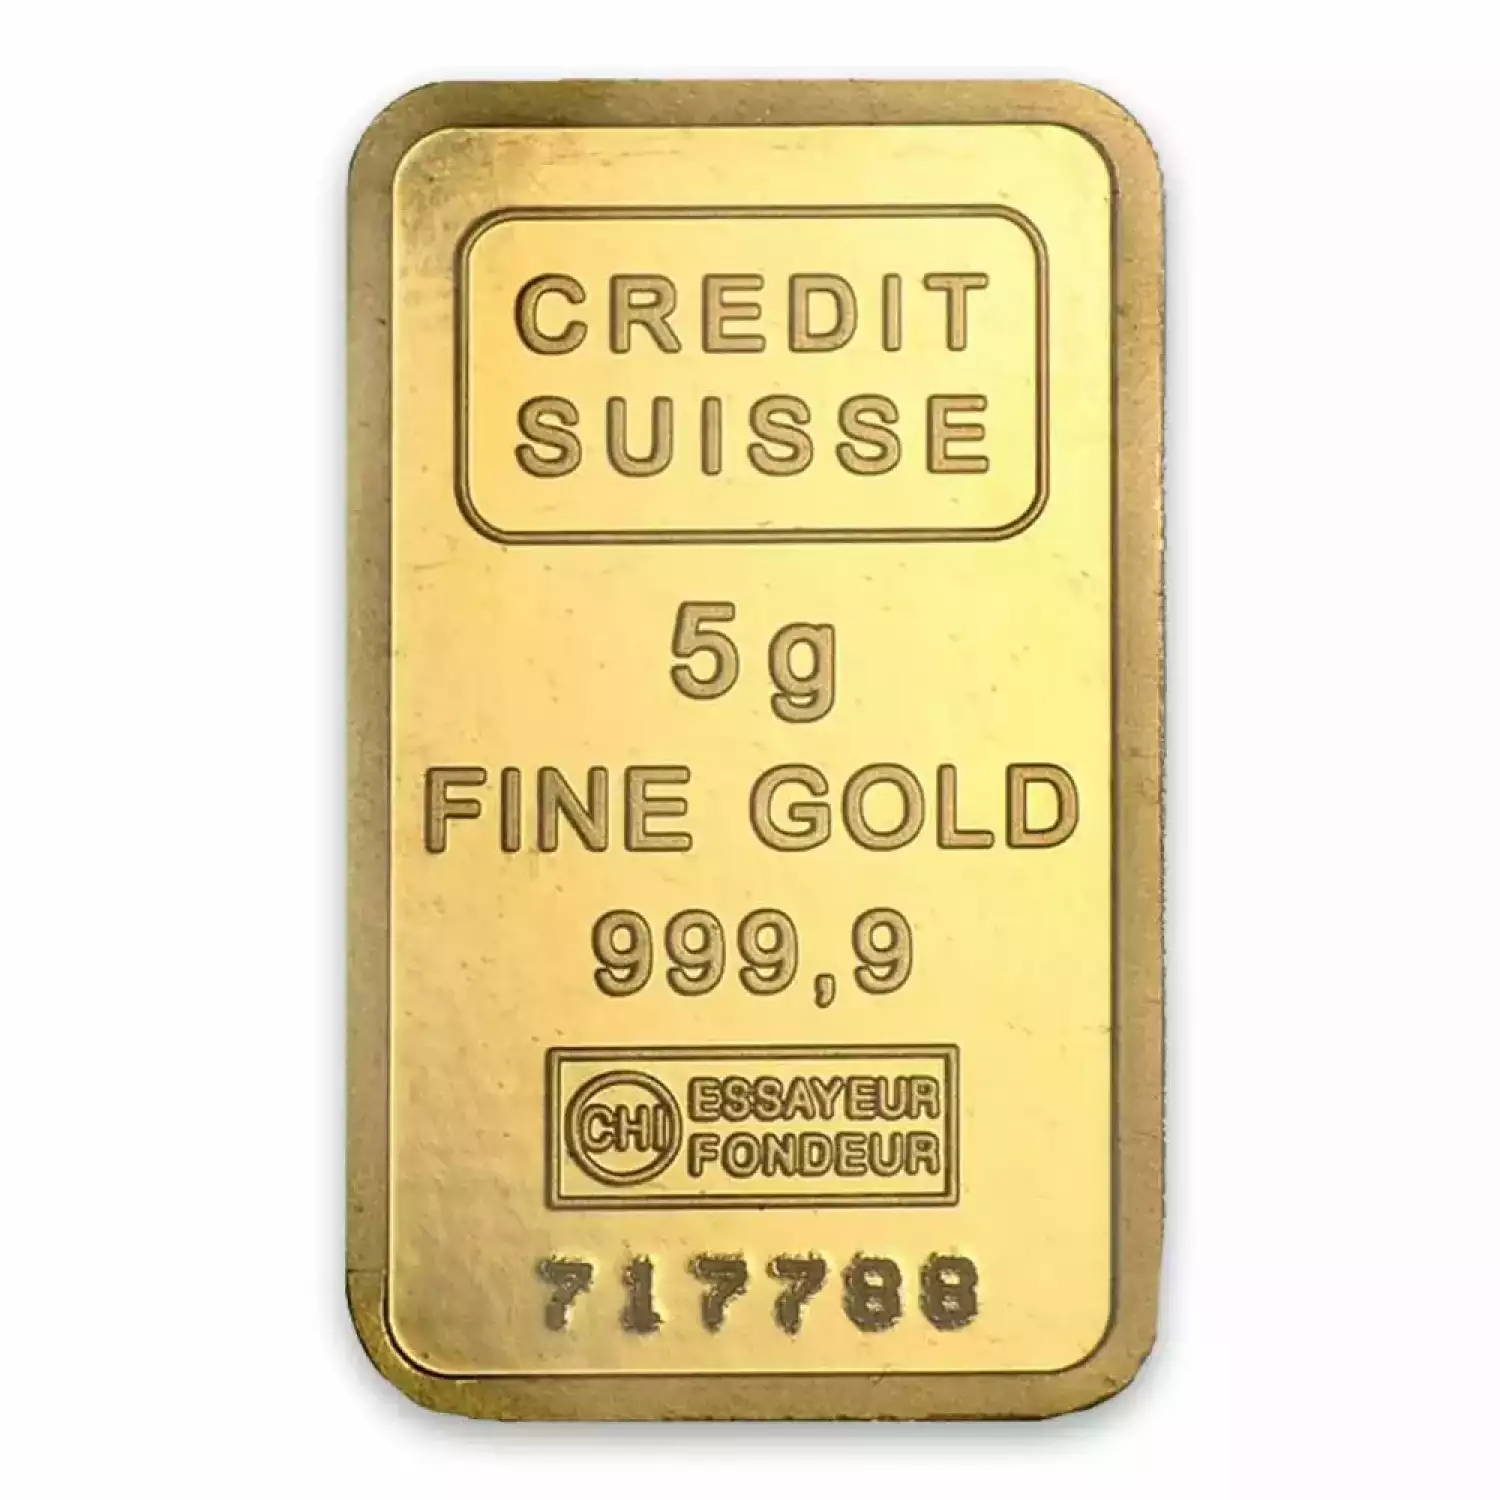 5g Credit Suisse Gold Bar (2)